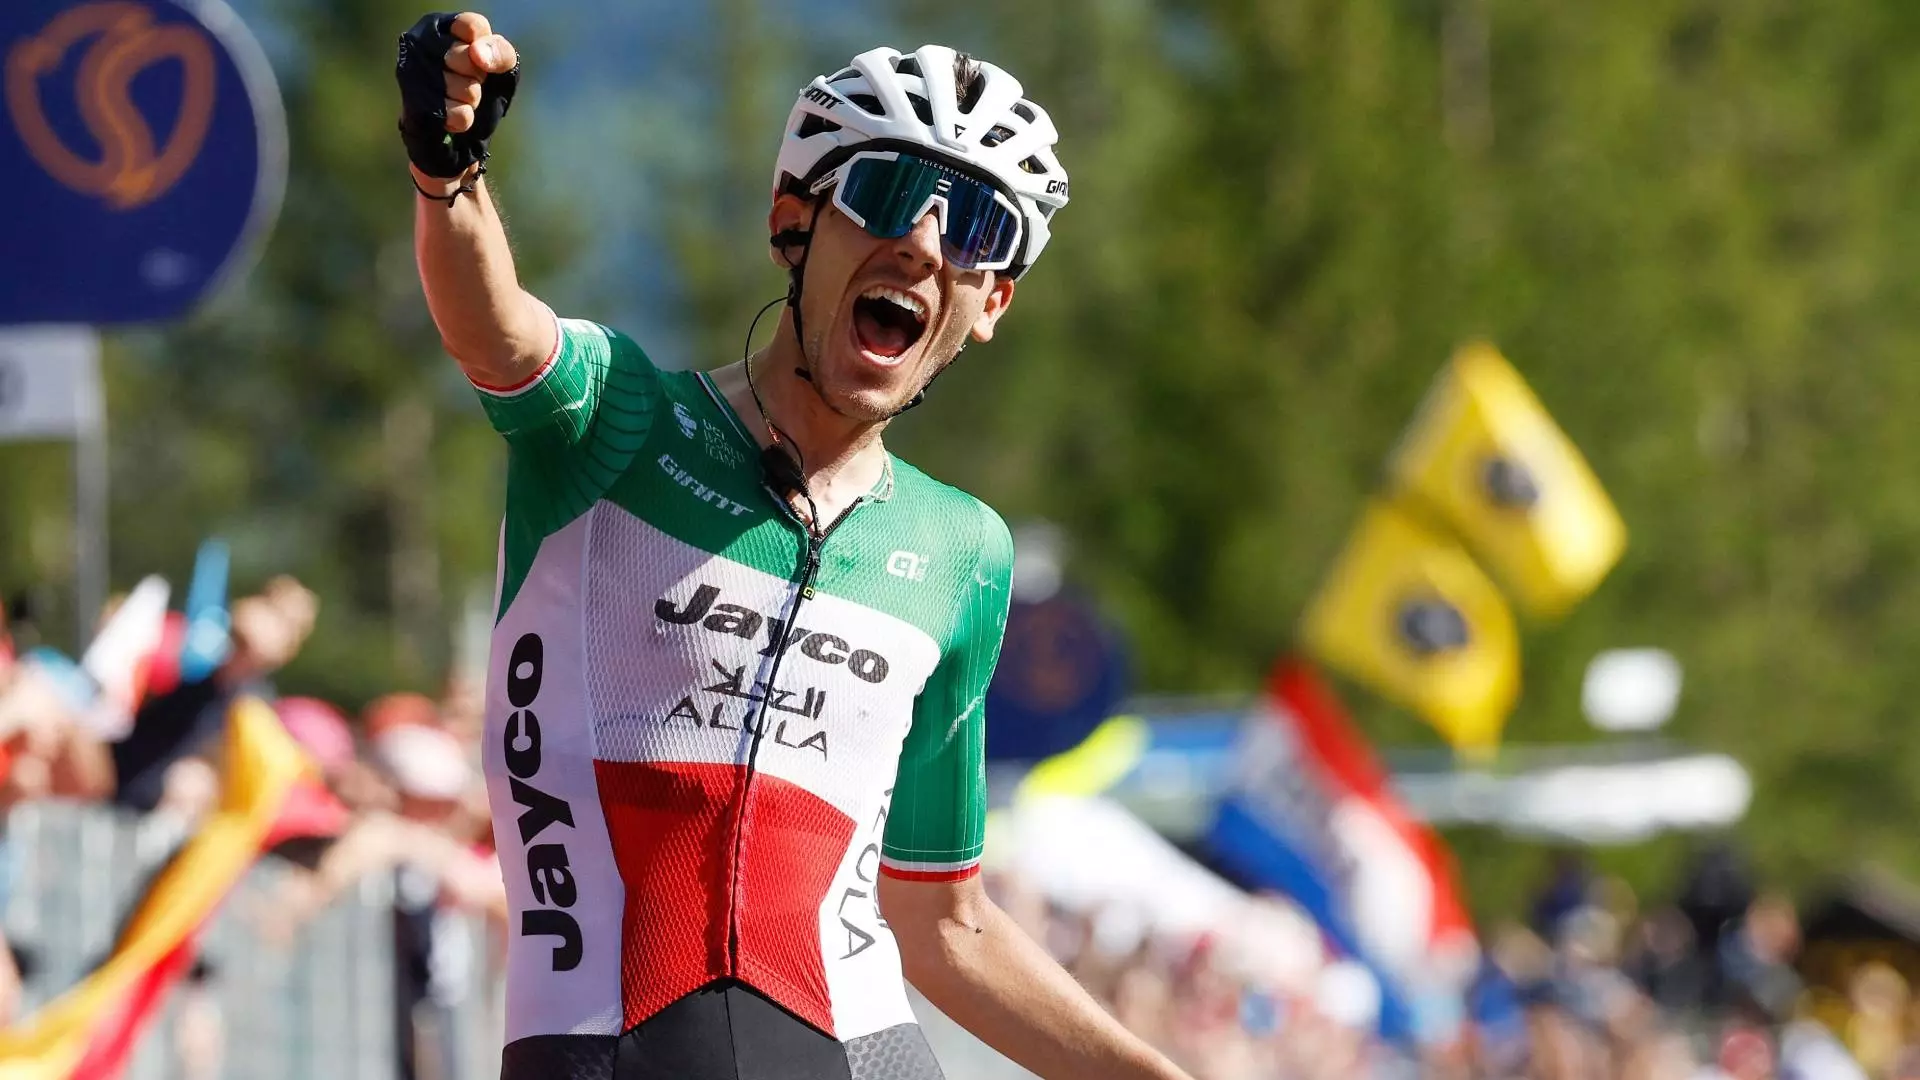 Terrore per Filippo Zana al Giro di Slovenia